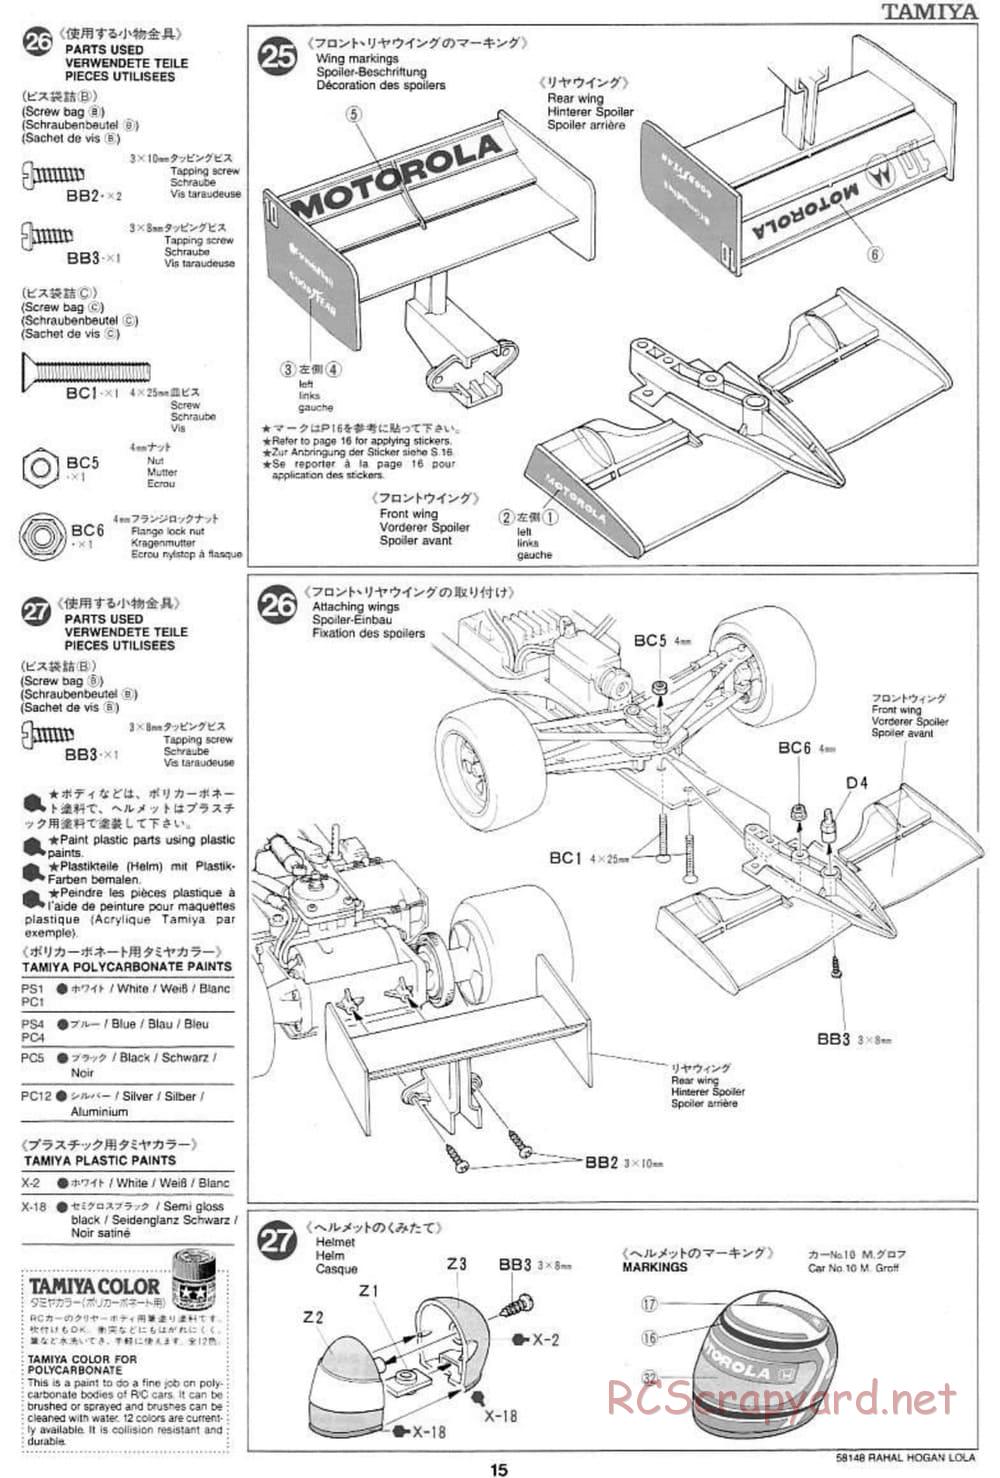 Tamiya - Rahal-Hogan Motorola Lola T94/00 Honda - F103L Chassis - Manual - Page 15